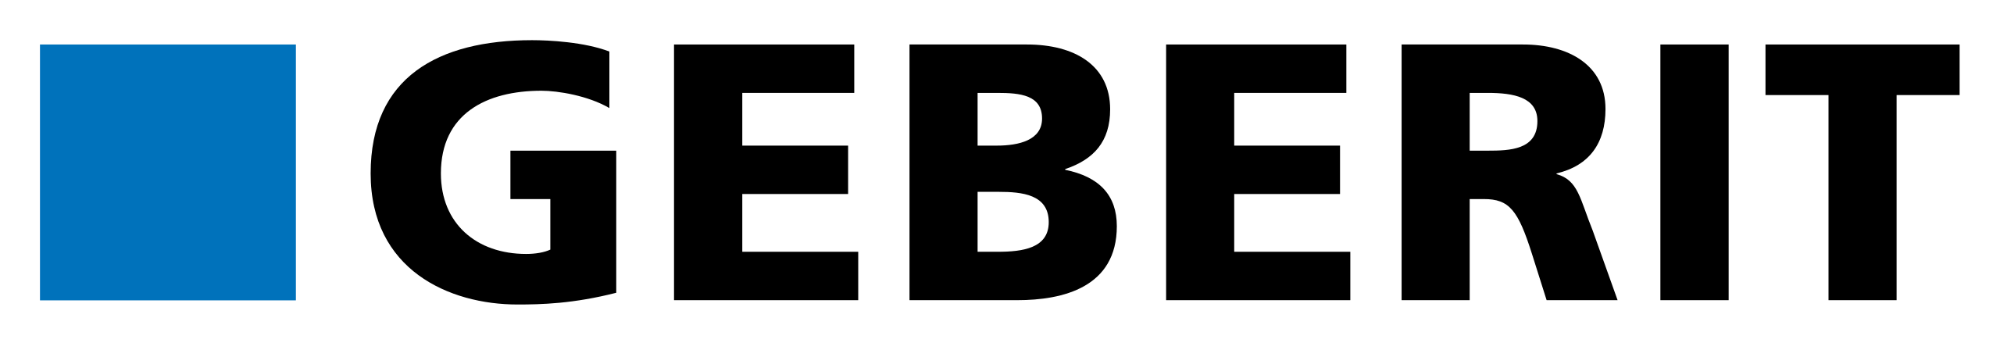 Geberit-Logo.svg.png